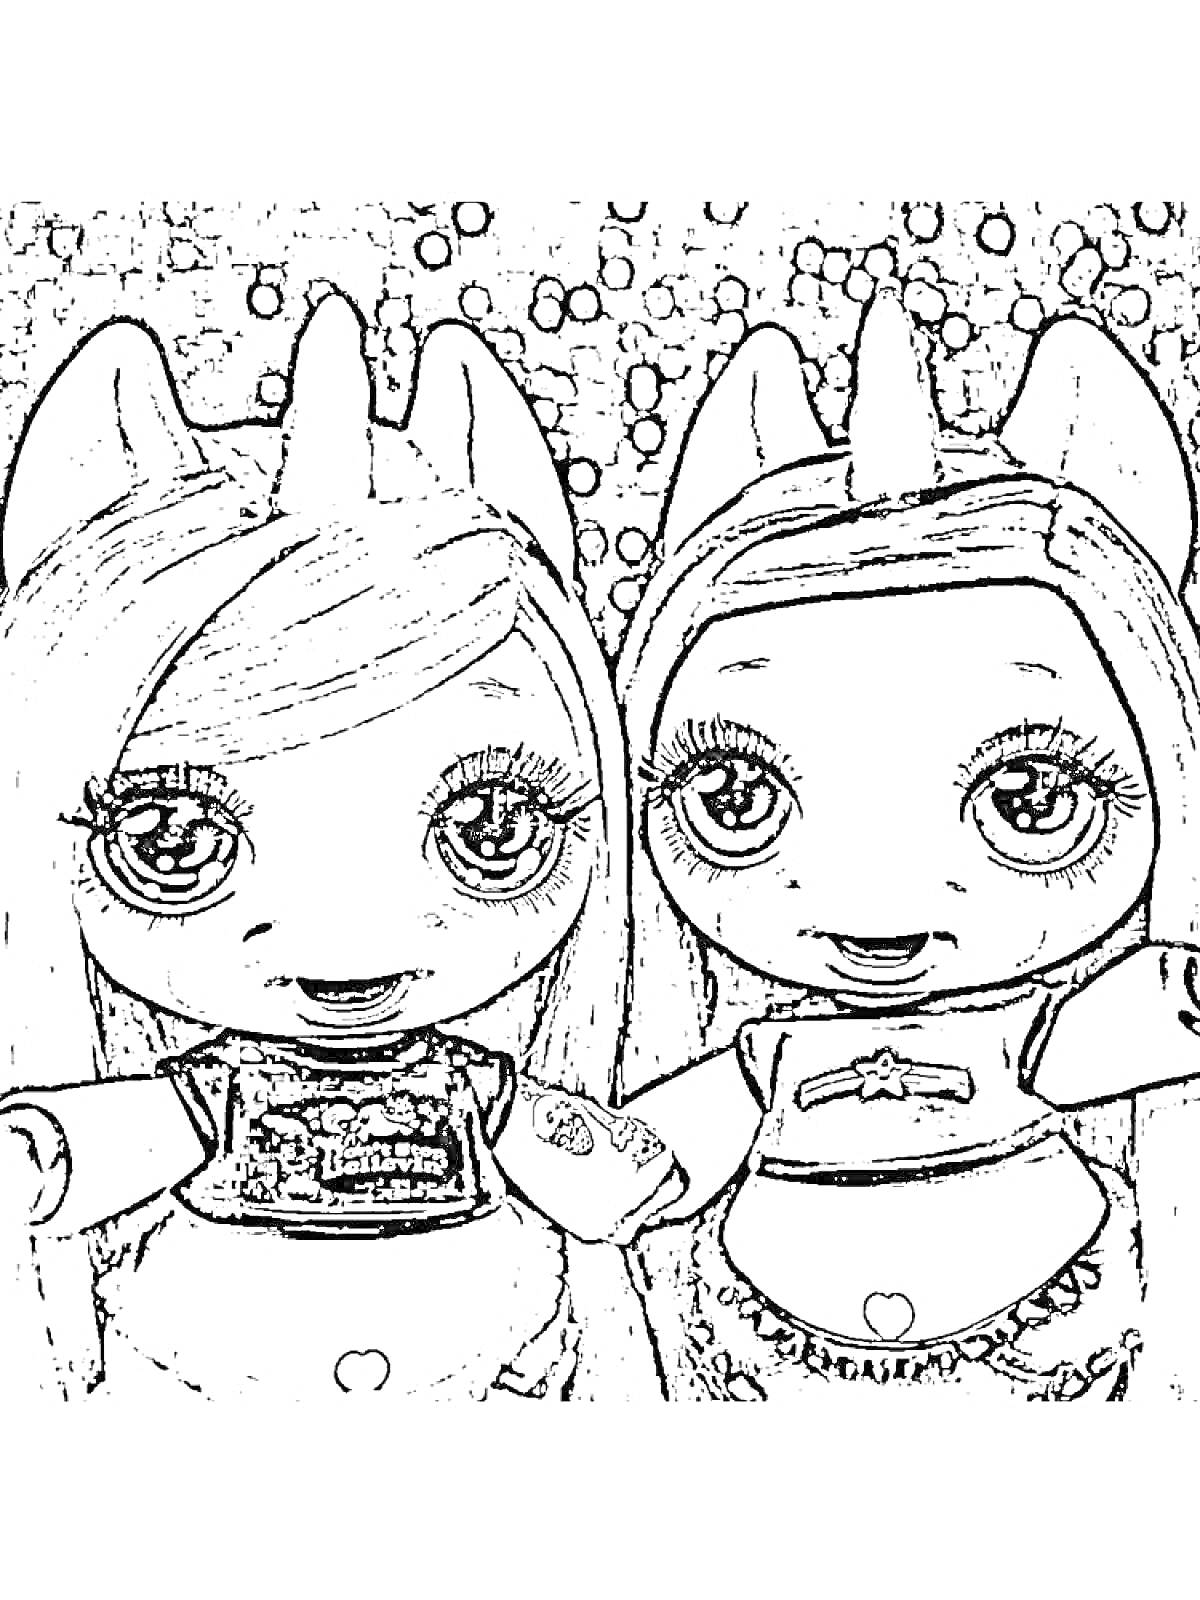 Две куклы Пупси Слайм с хвостиками и большими глазами, стоящие рядом